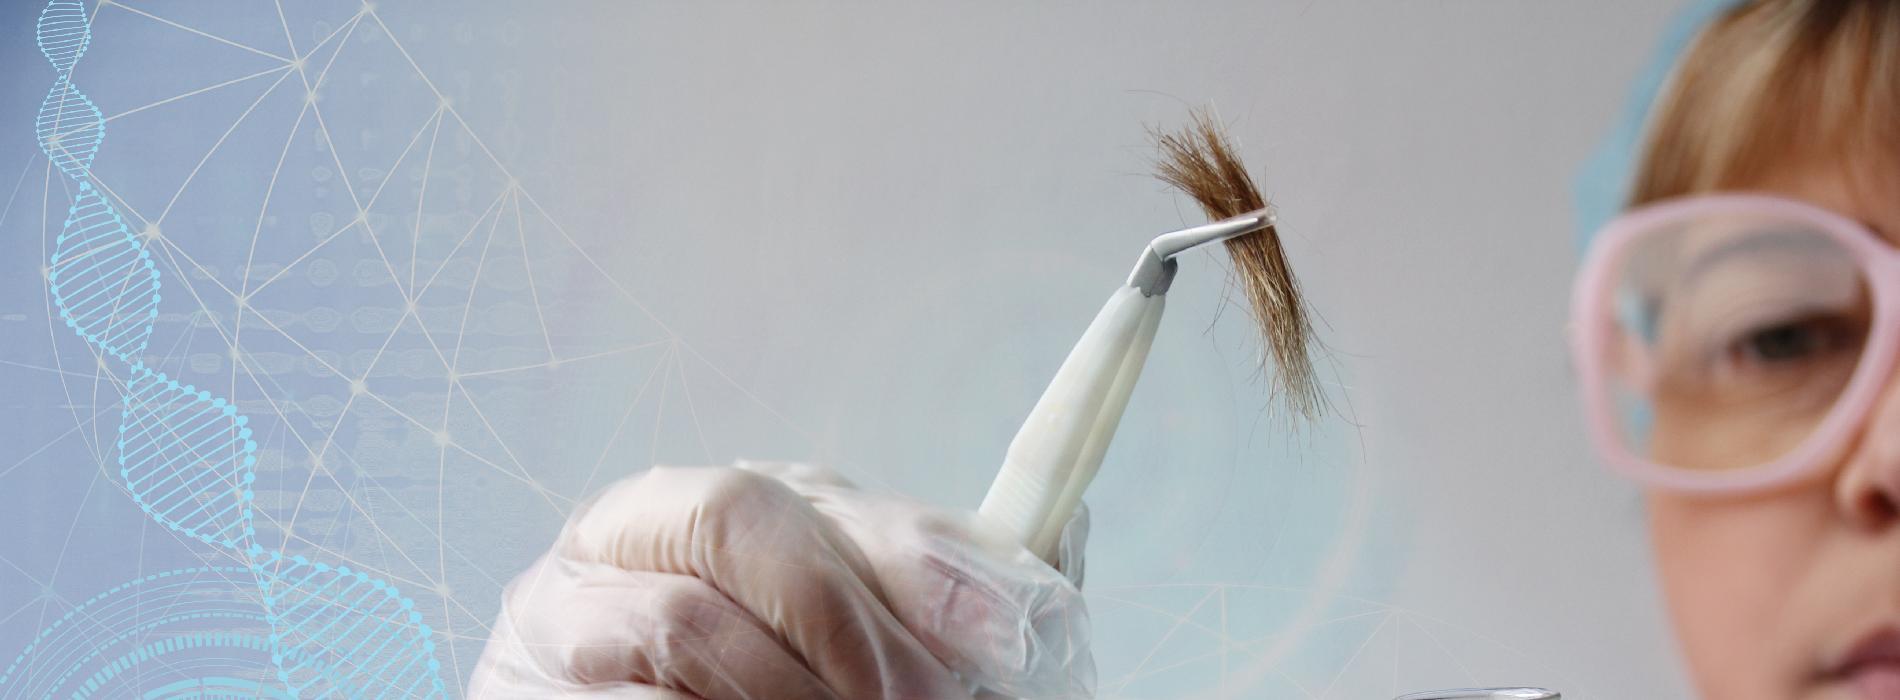 Analiza pierwiastkowa włosa - o co chodzi w badaniu z włosa?